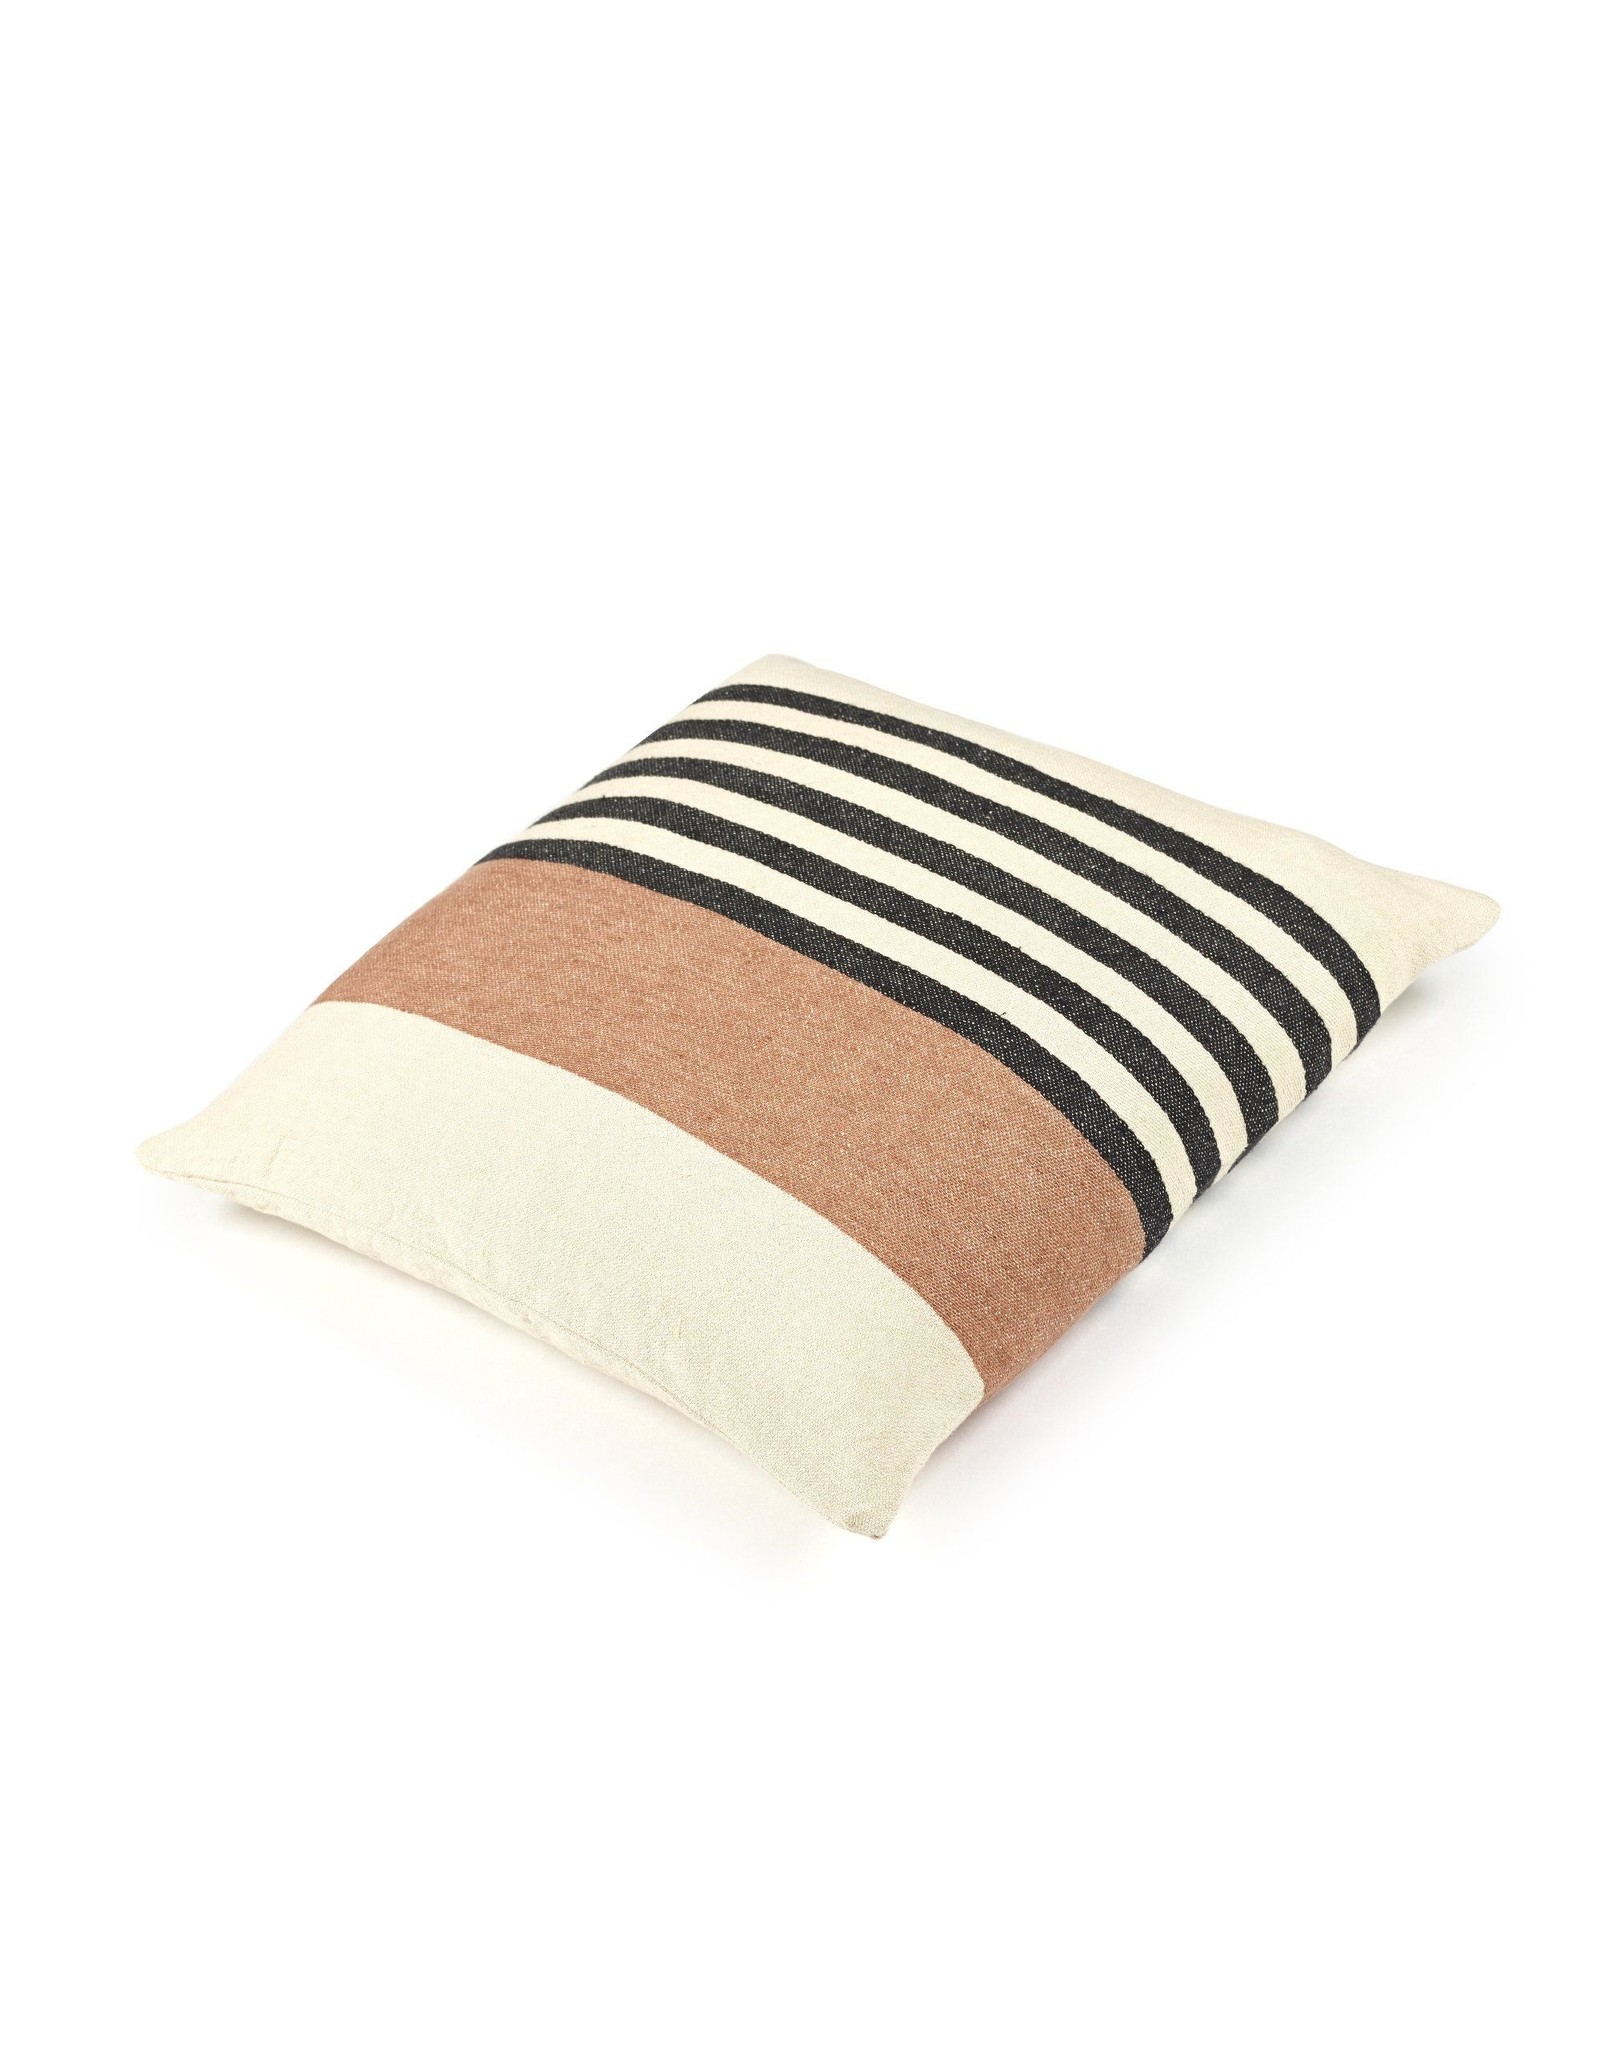 The Belgian Harlan Stripe Inyo Pillow 20 x 20